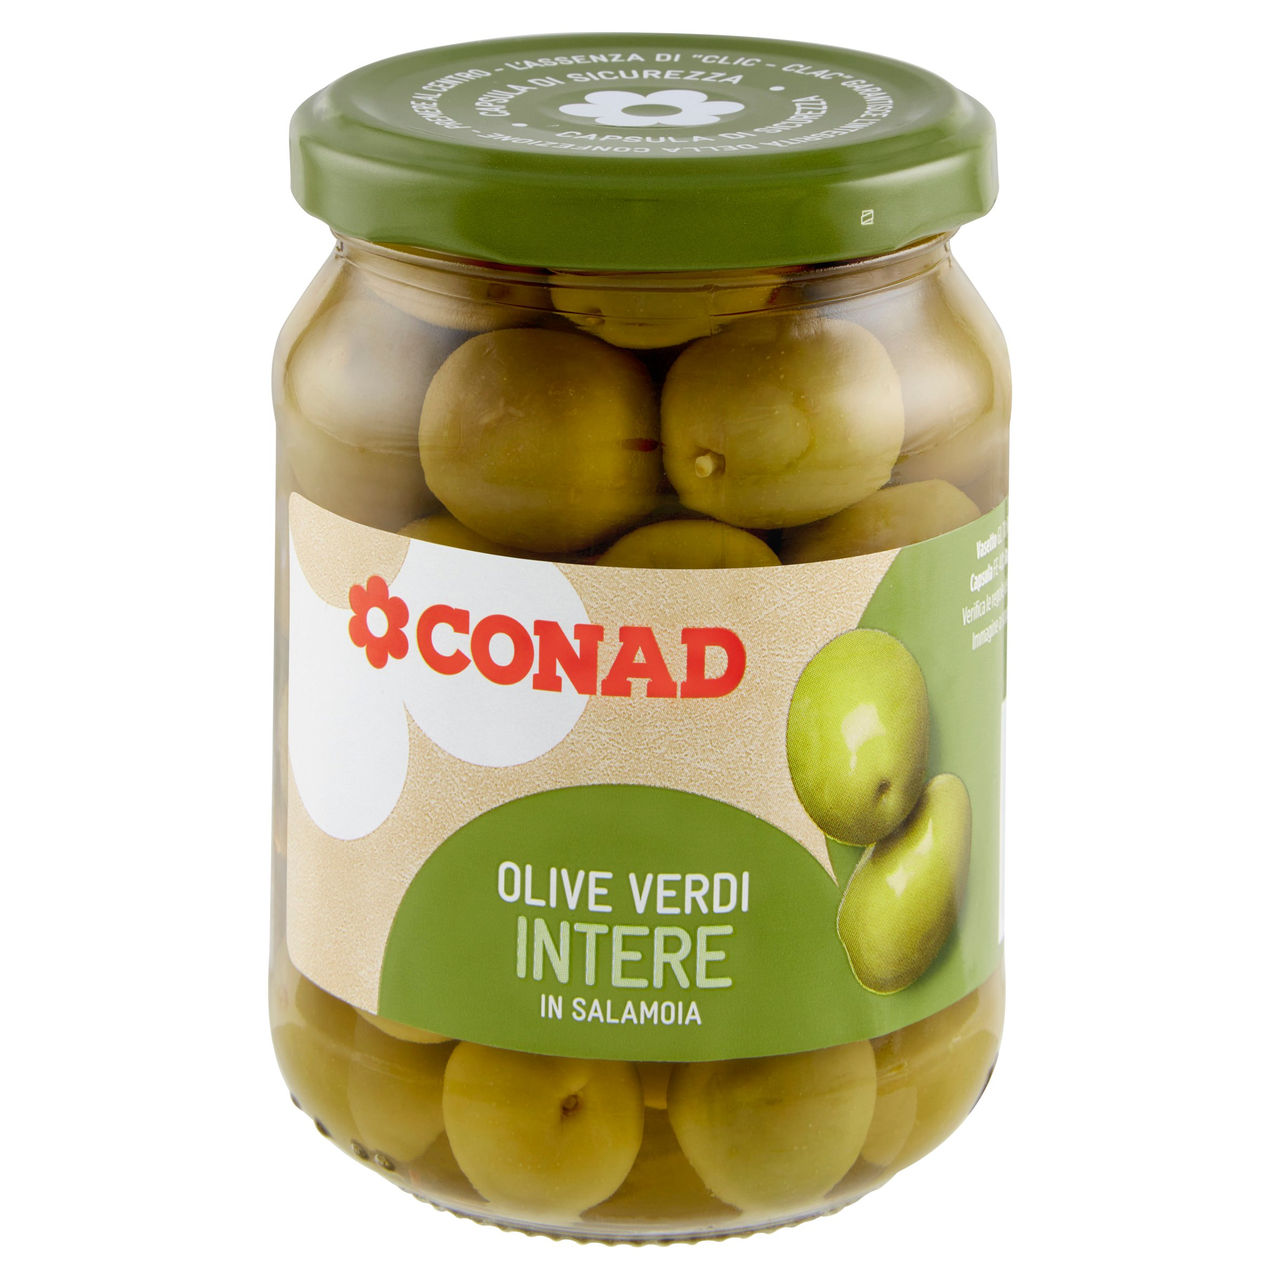 Olive Verdi Intere in Salamoia 310 g Conad